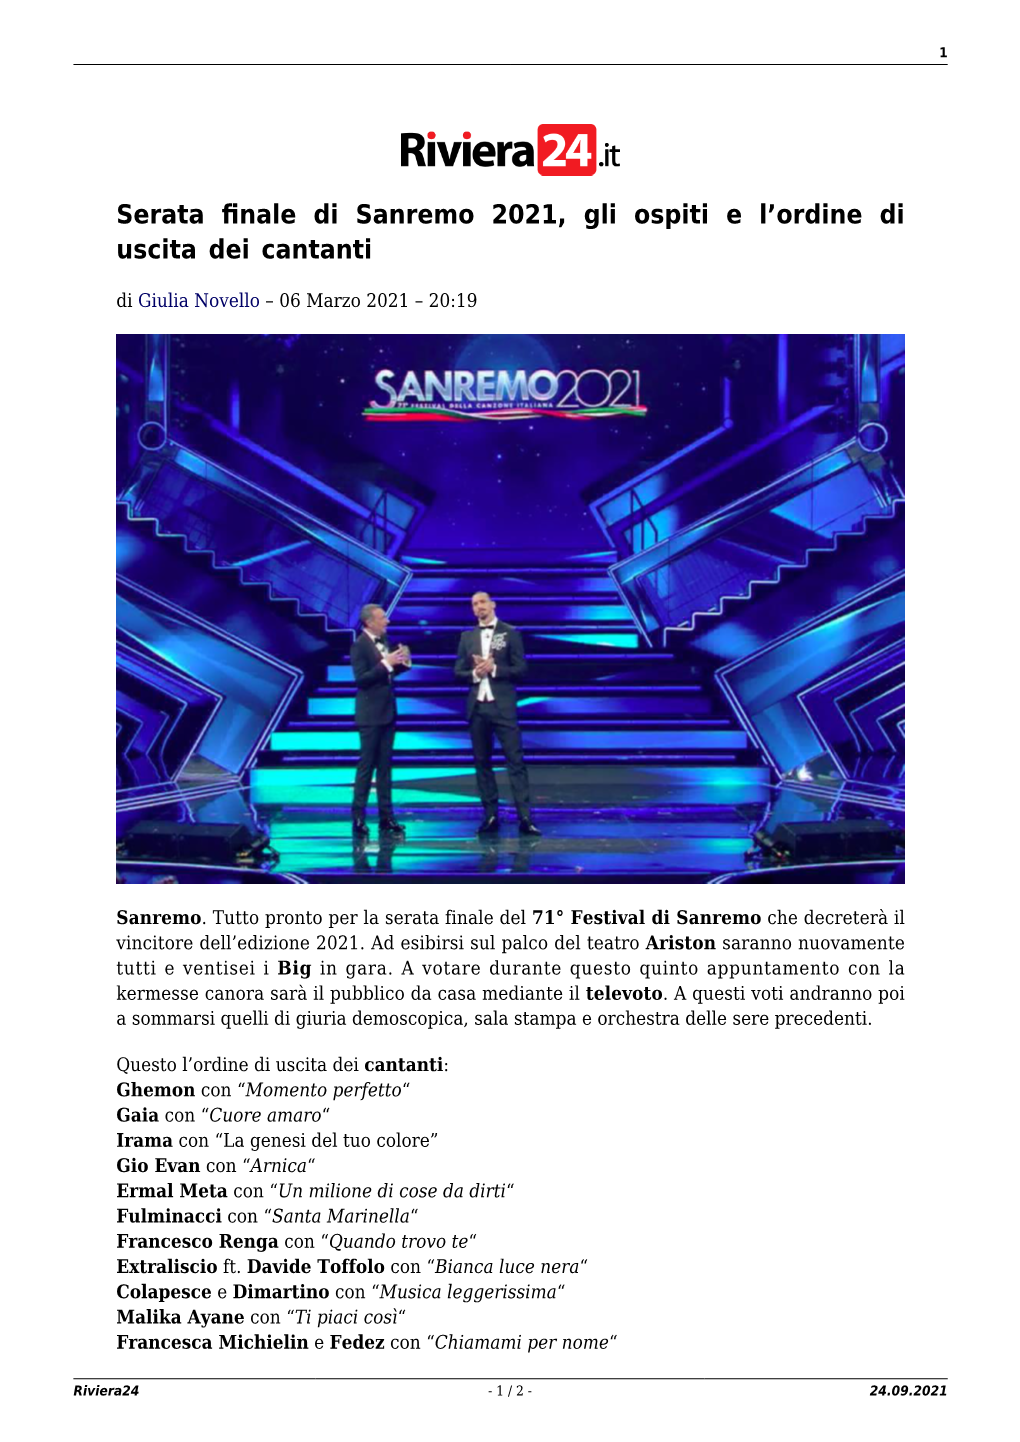 Serata Finale Di Sanremo 2021, Gli Ospiti E L'ordine Di Uscita Dei Cantanti